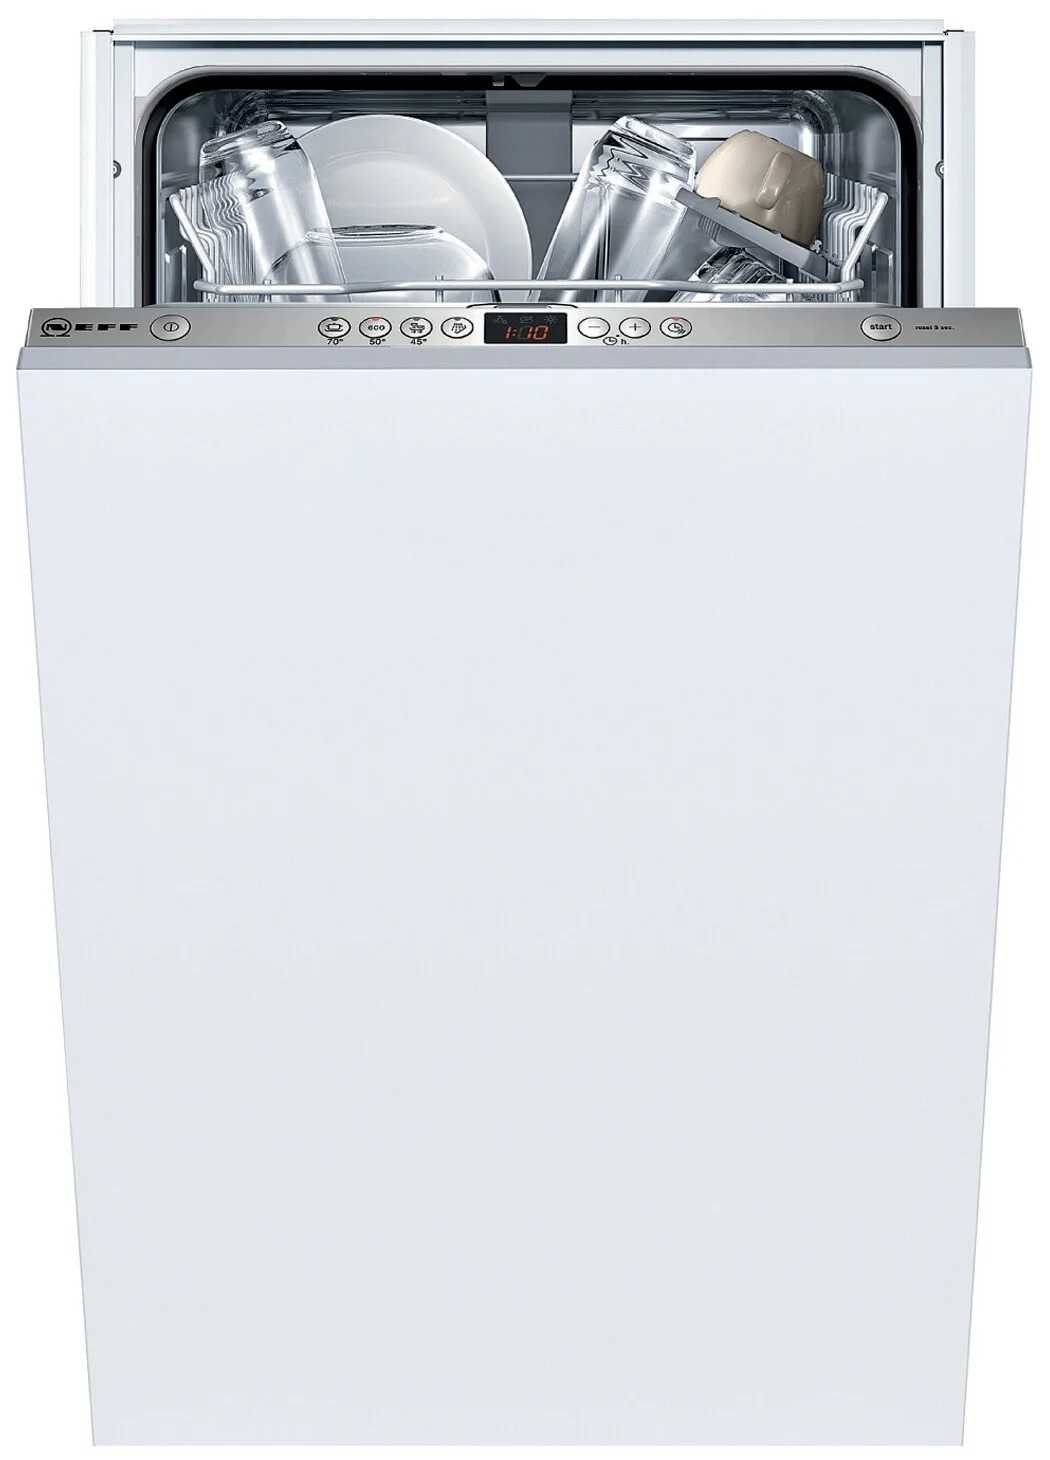 Руководство neff s853hkx50r посудомоечная машина